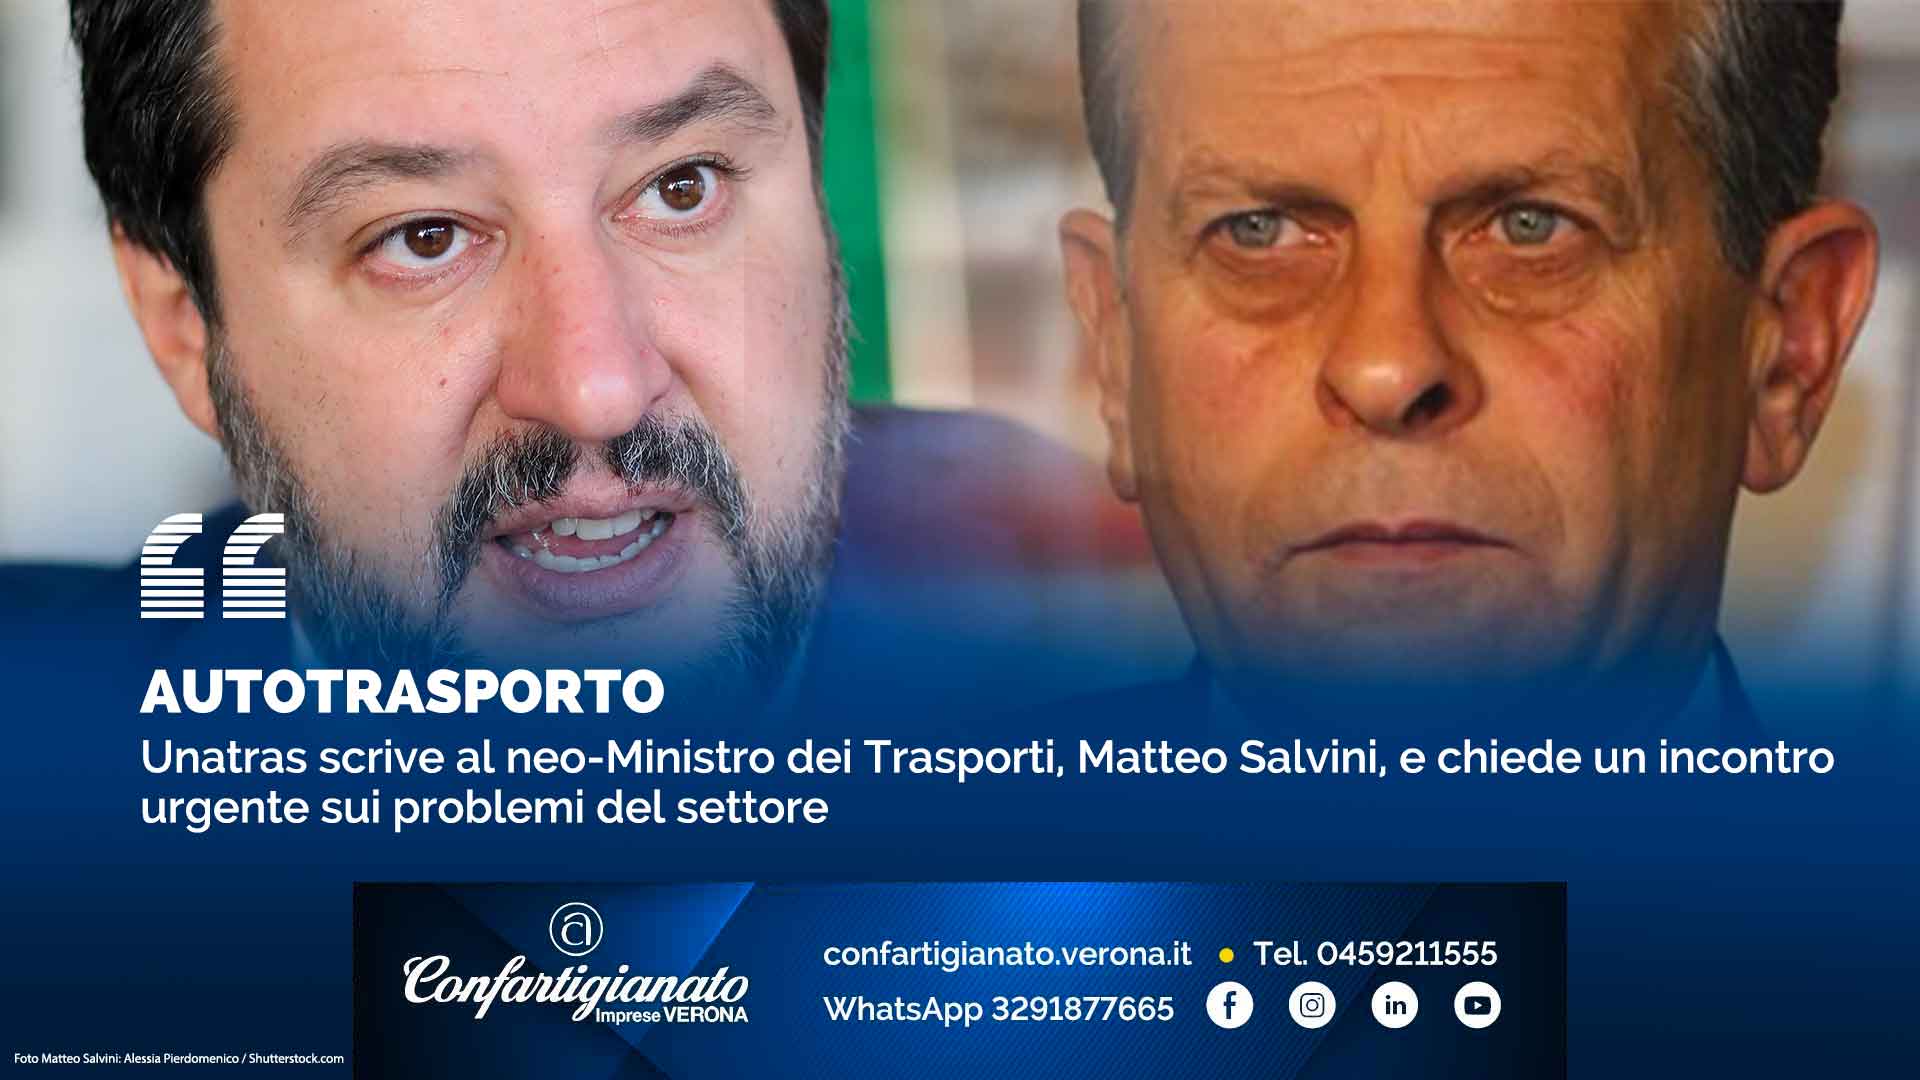 AUTOTRASPORTO – Unatras scrive al neo-Ministro dei Trasporti, Matteo Salvini, e chiede un incontro urgente sui problemi del settore